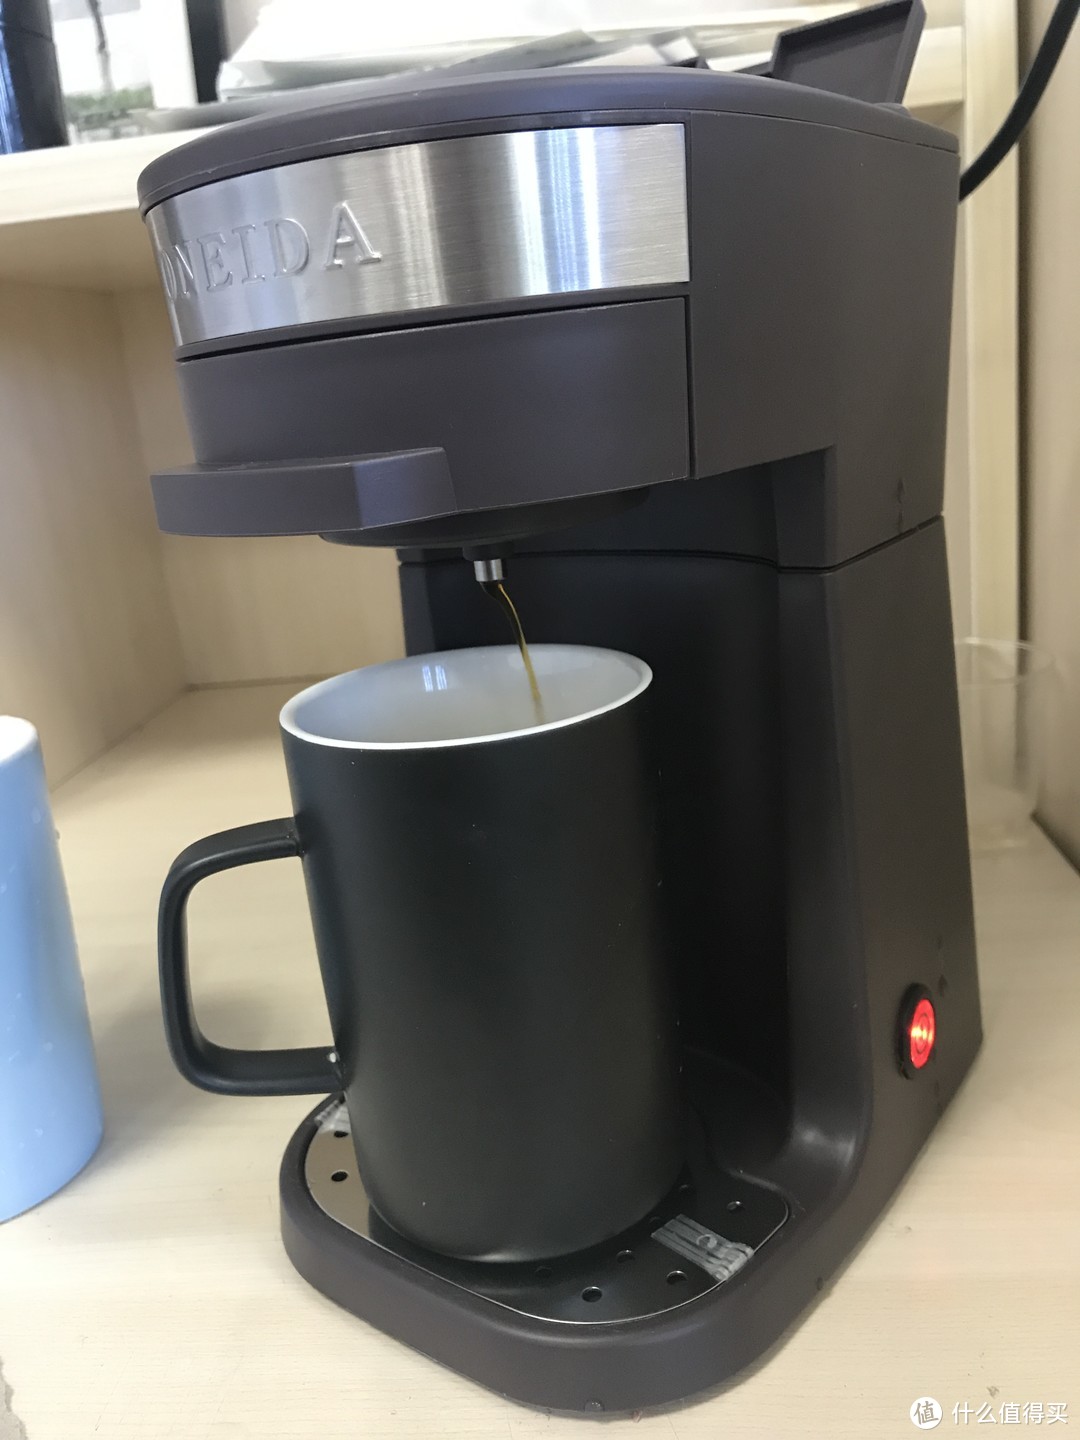 年轻人的第一台咖啡机  奥奈达 N1懒人咖啡机测评